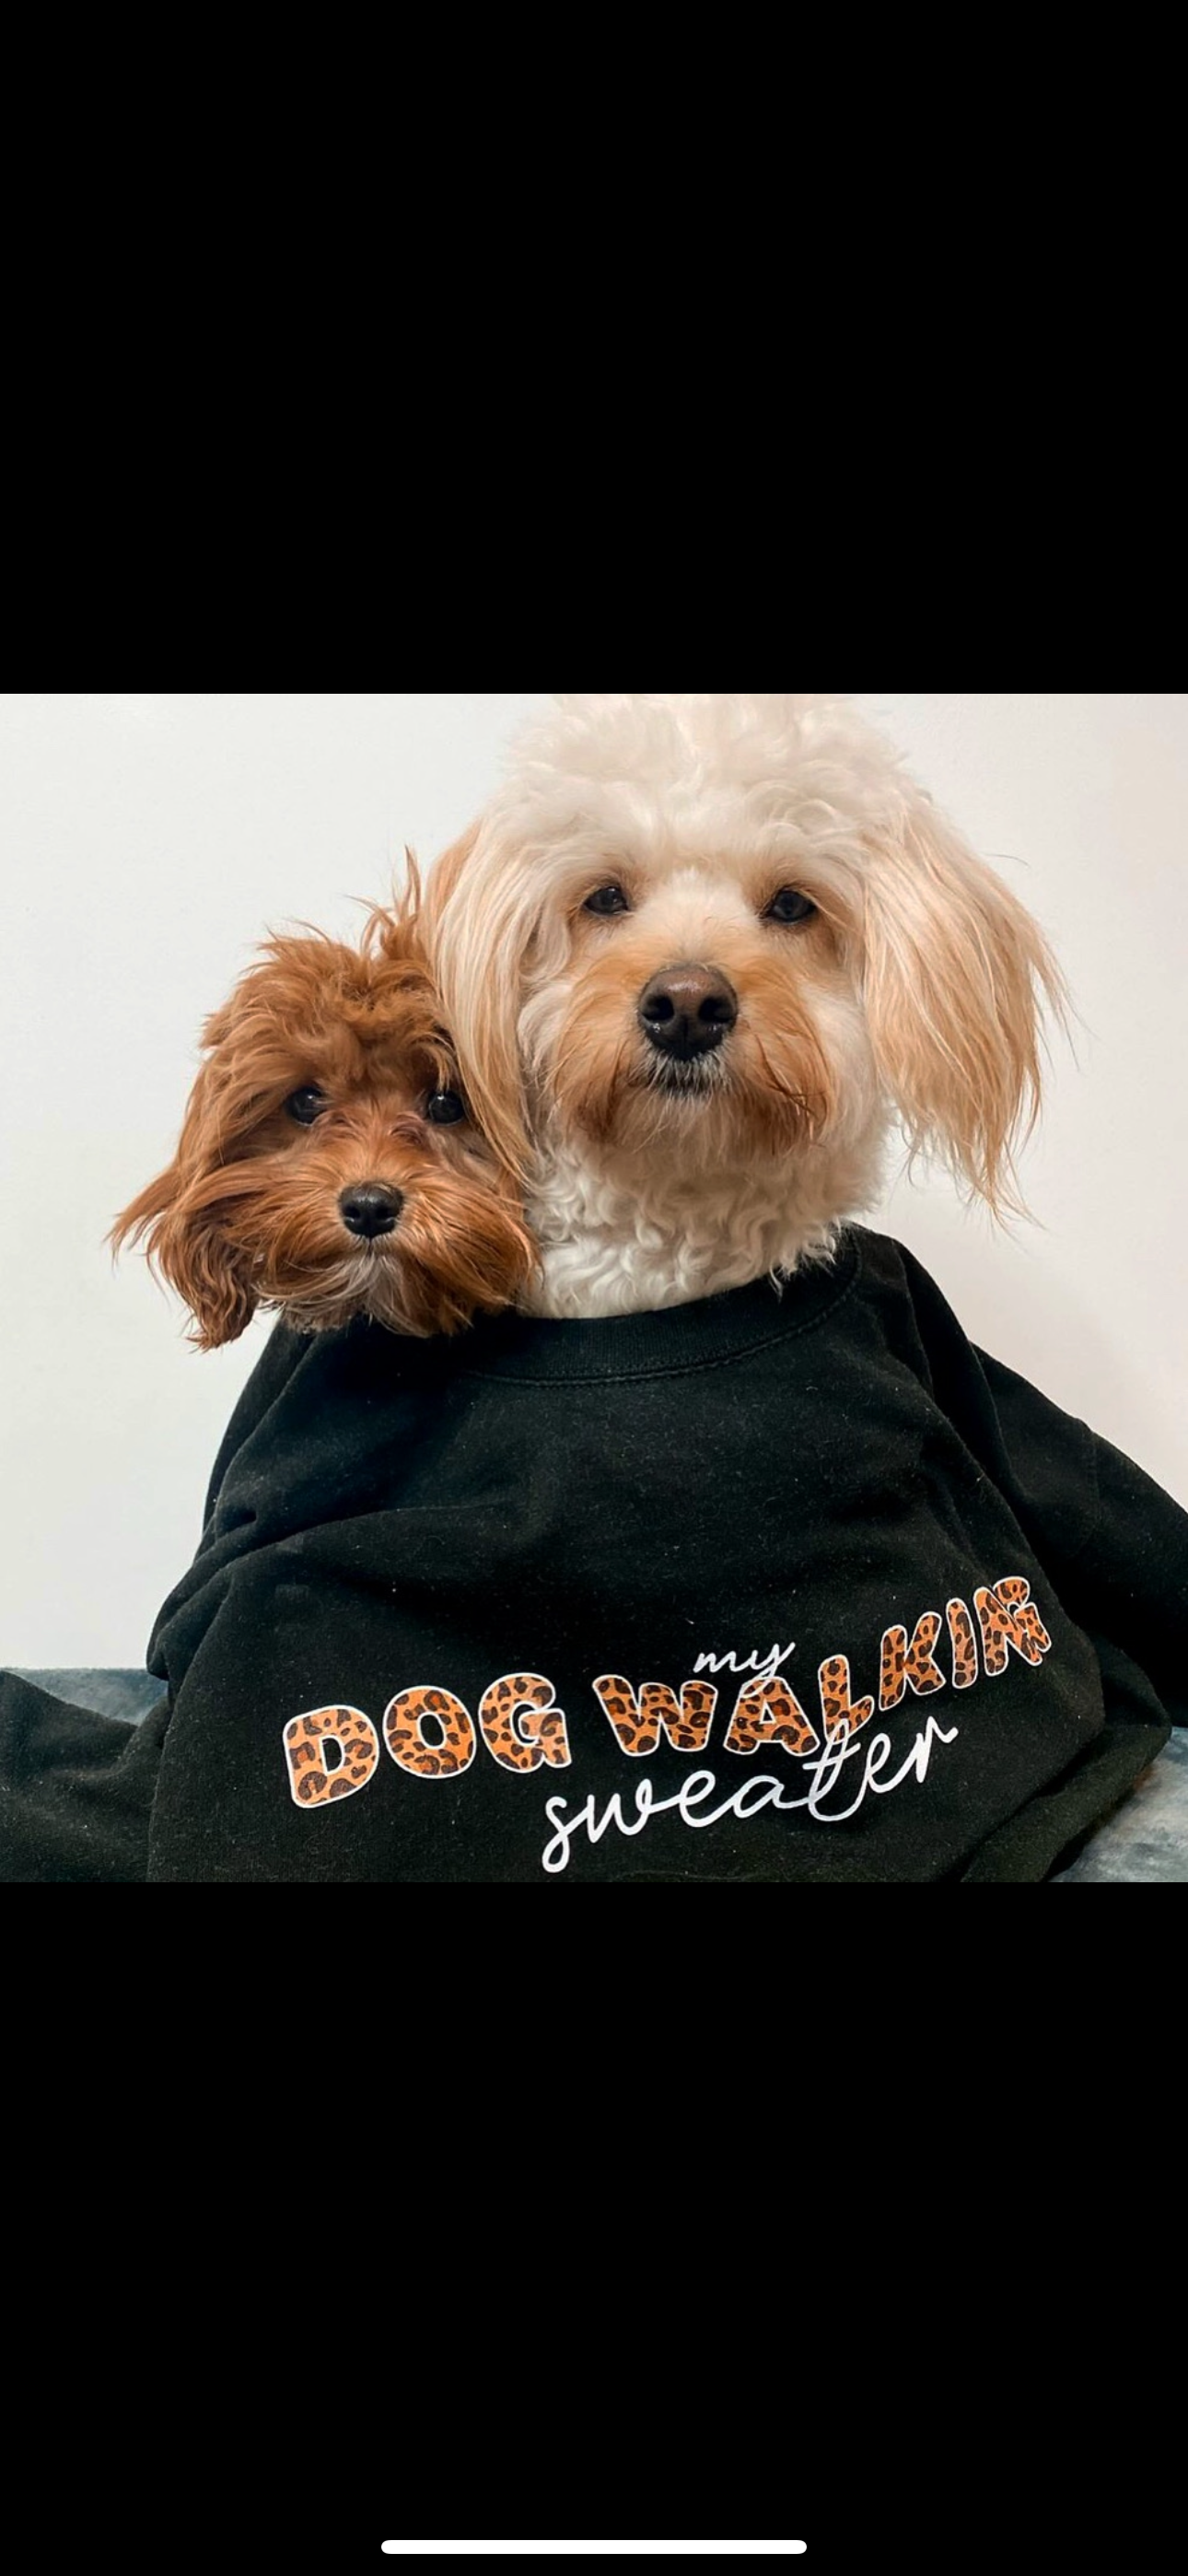 *Best Selling* My Dog Walking Sweater